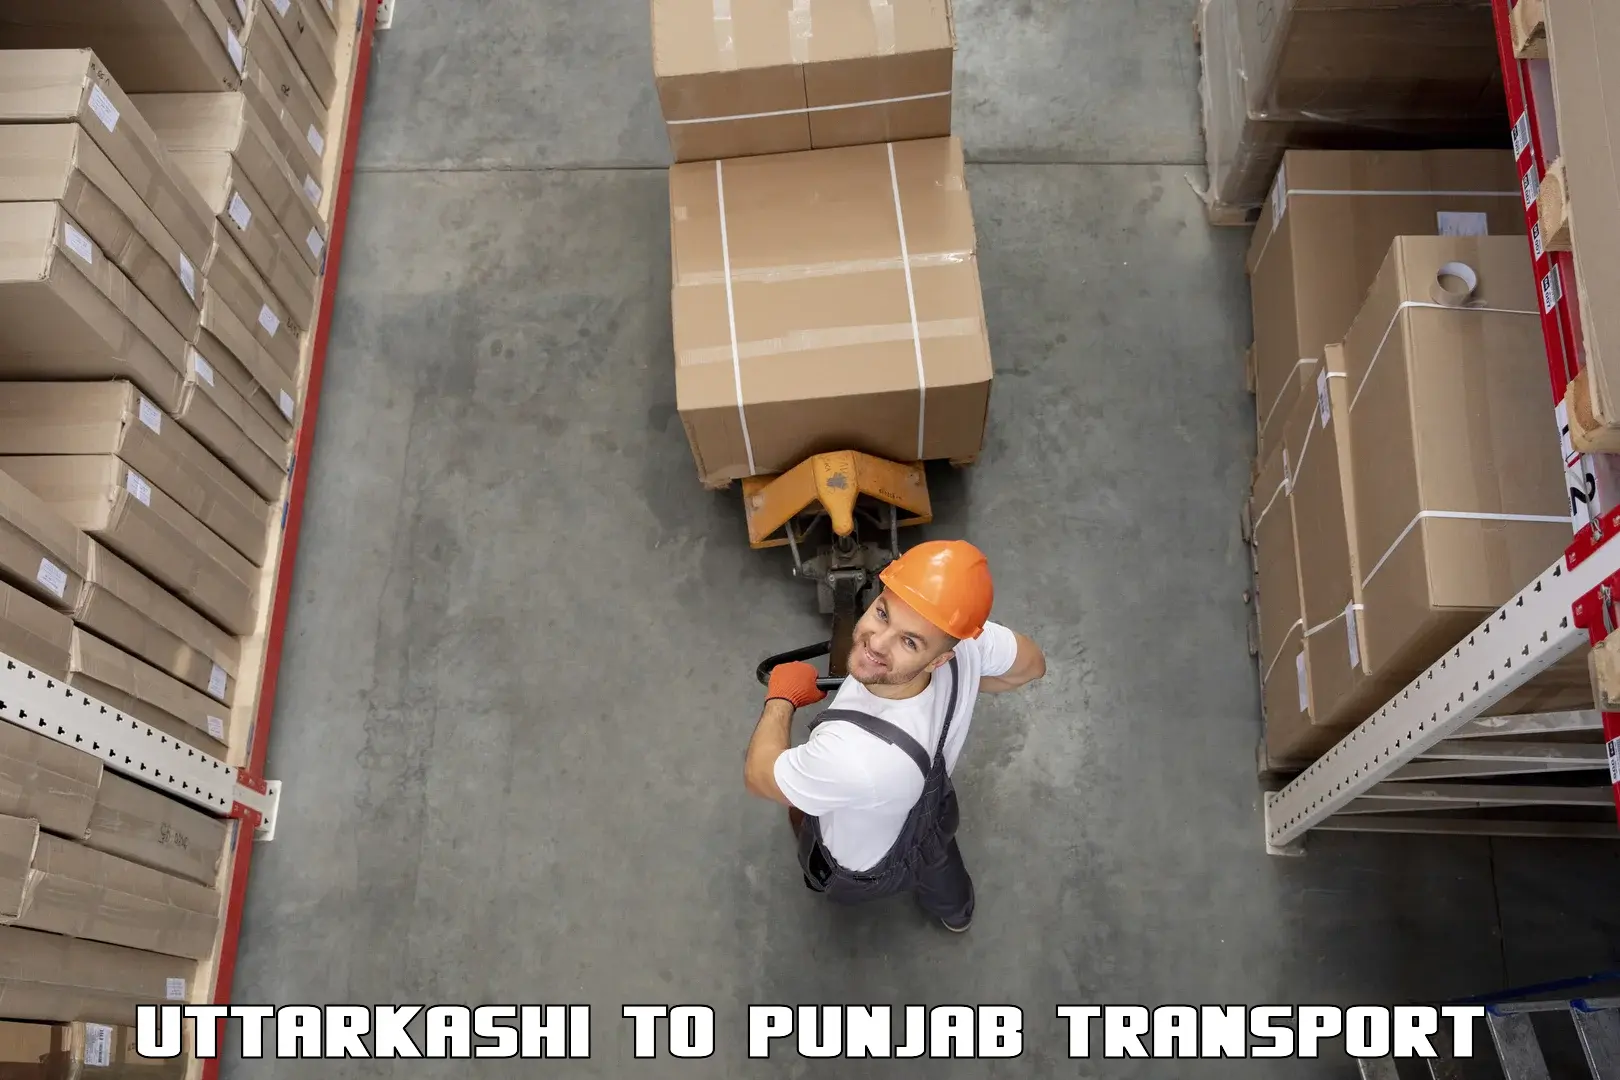 Road transport services Uttarkashi to Faridkot